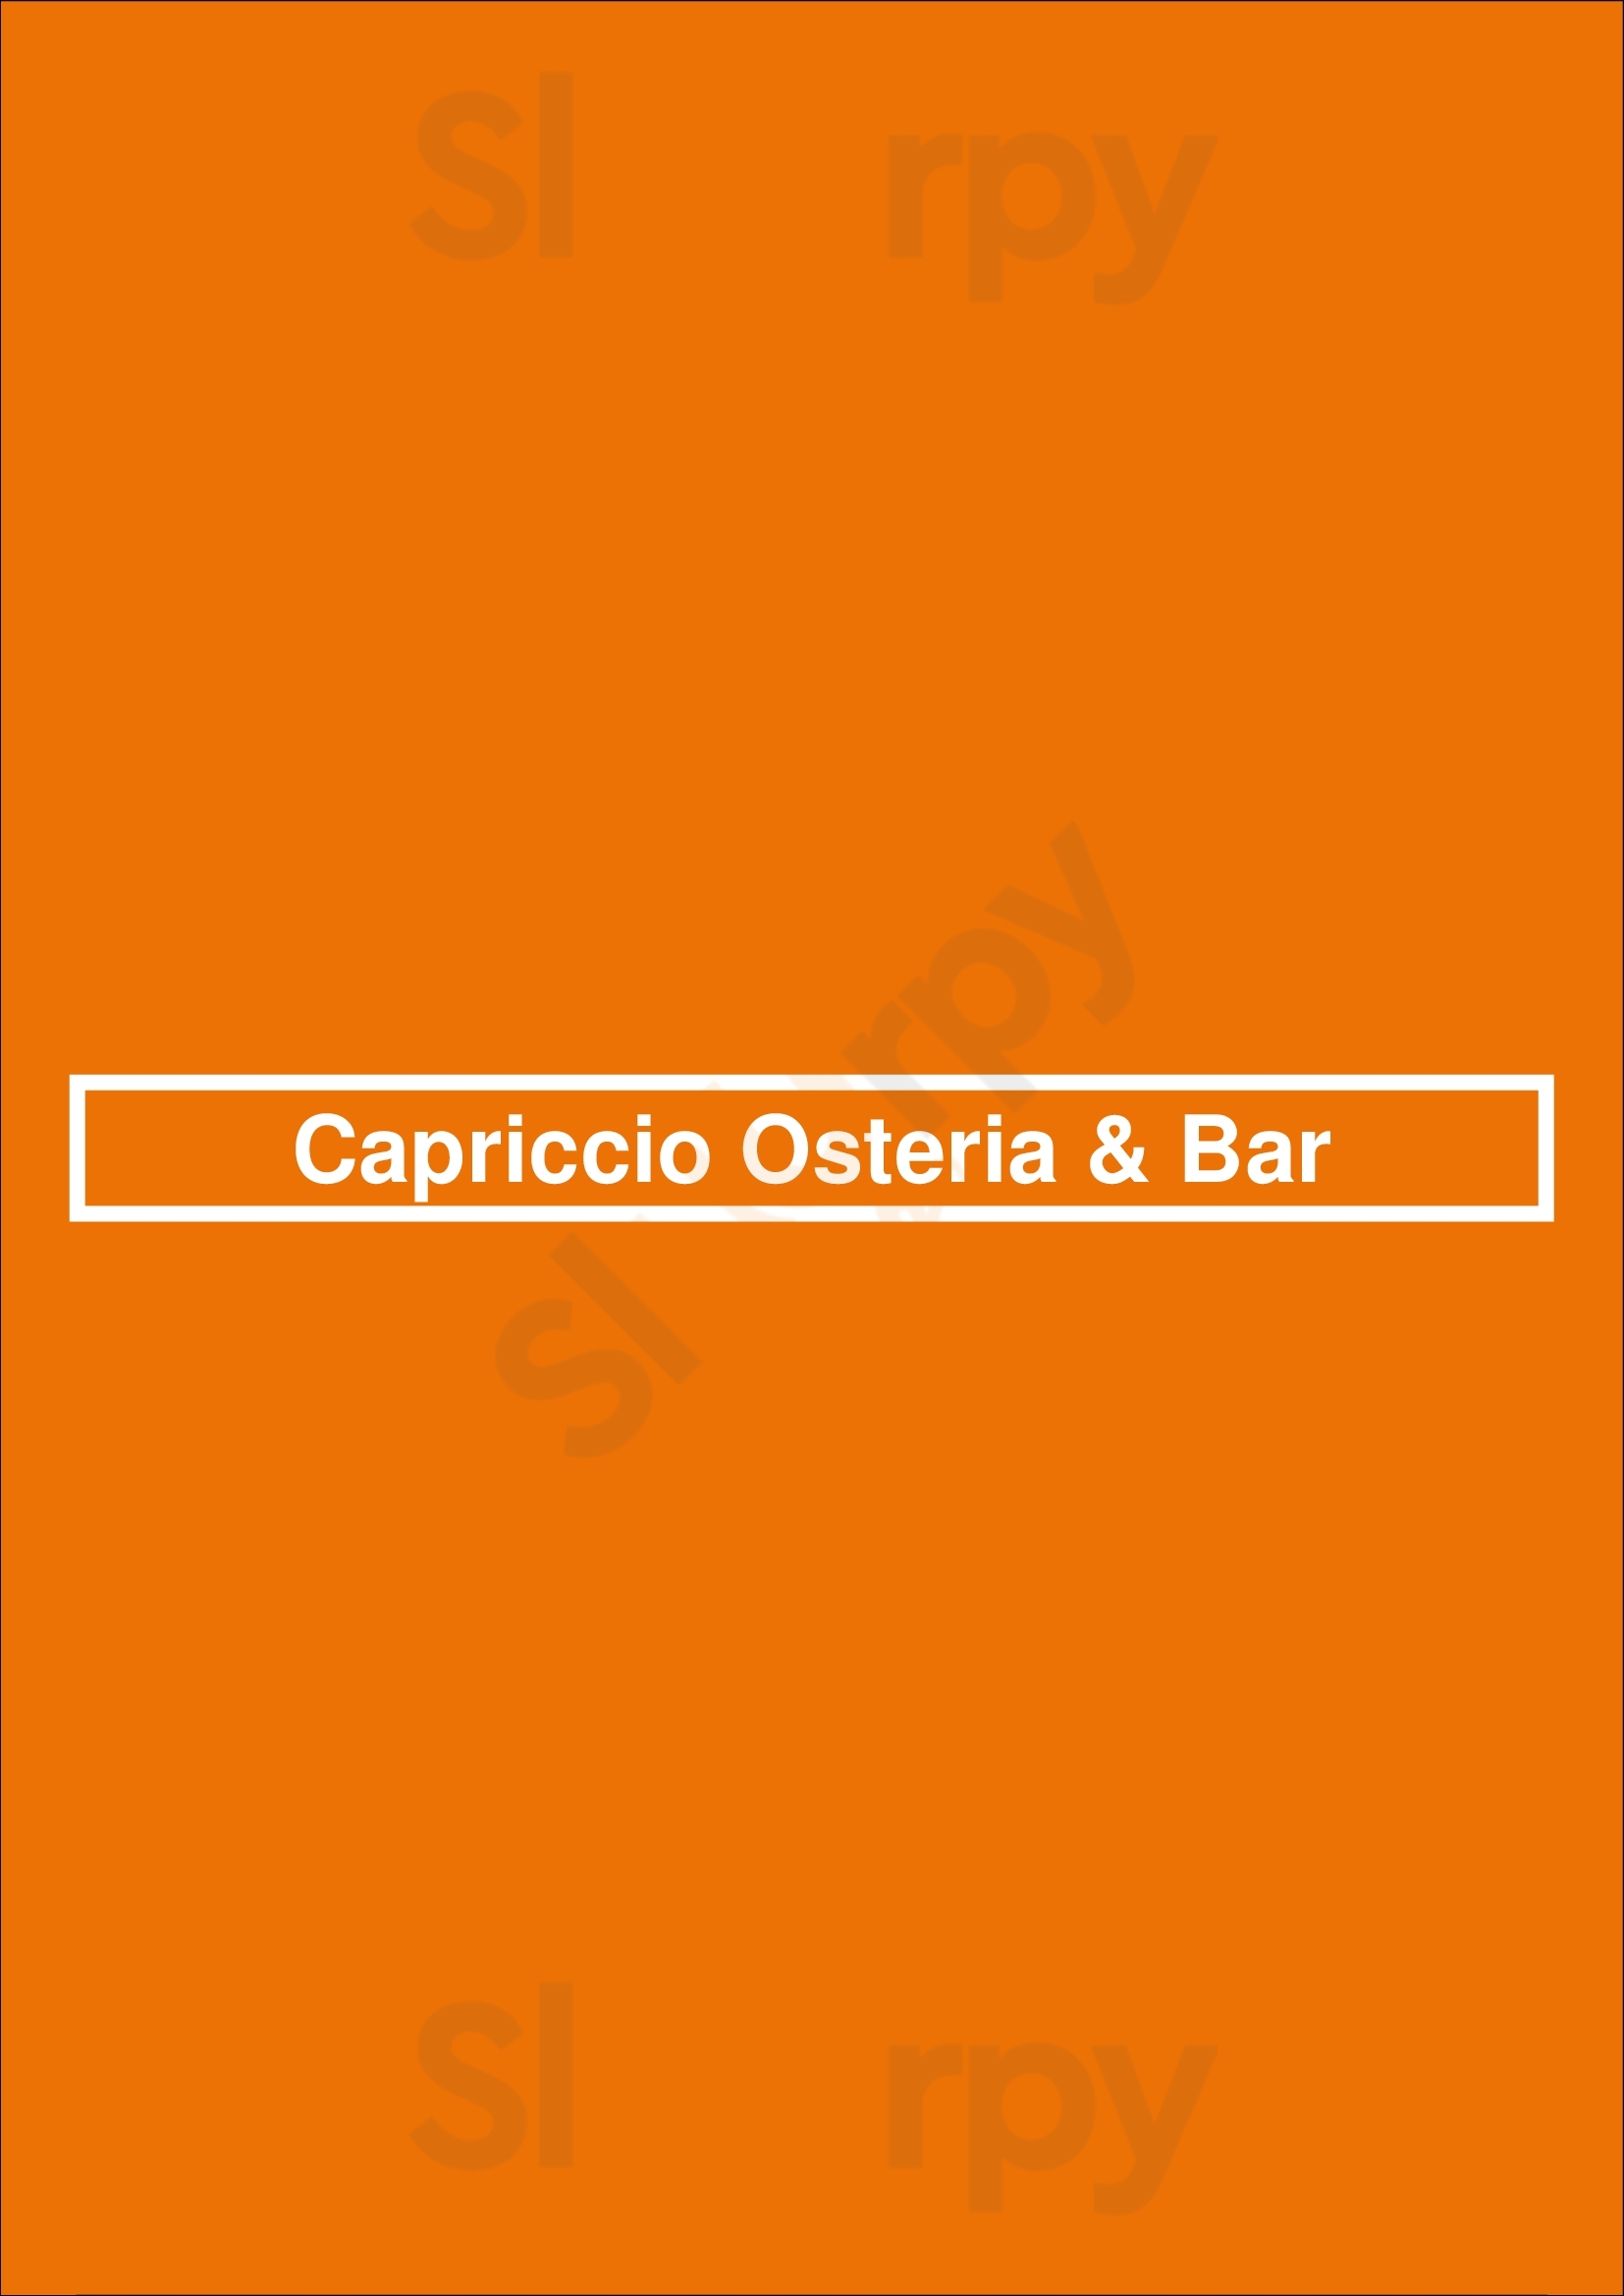 Capriccio Osteria & Bar Leichhardt Menu - 1